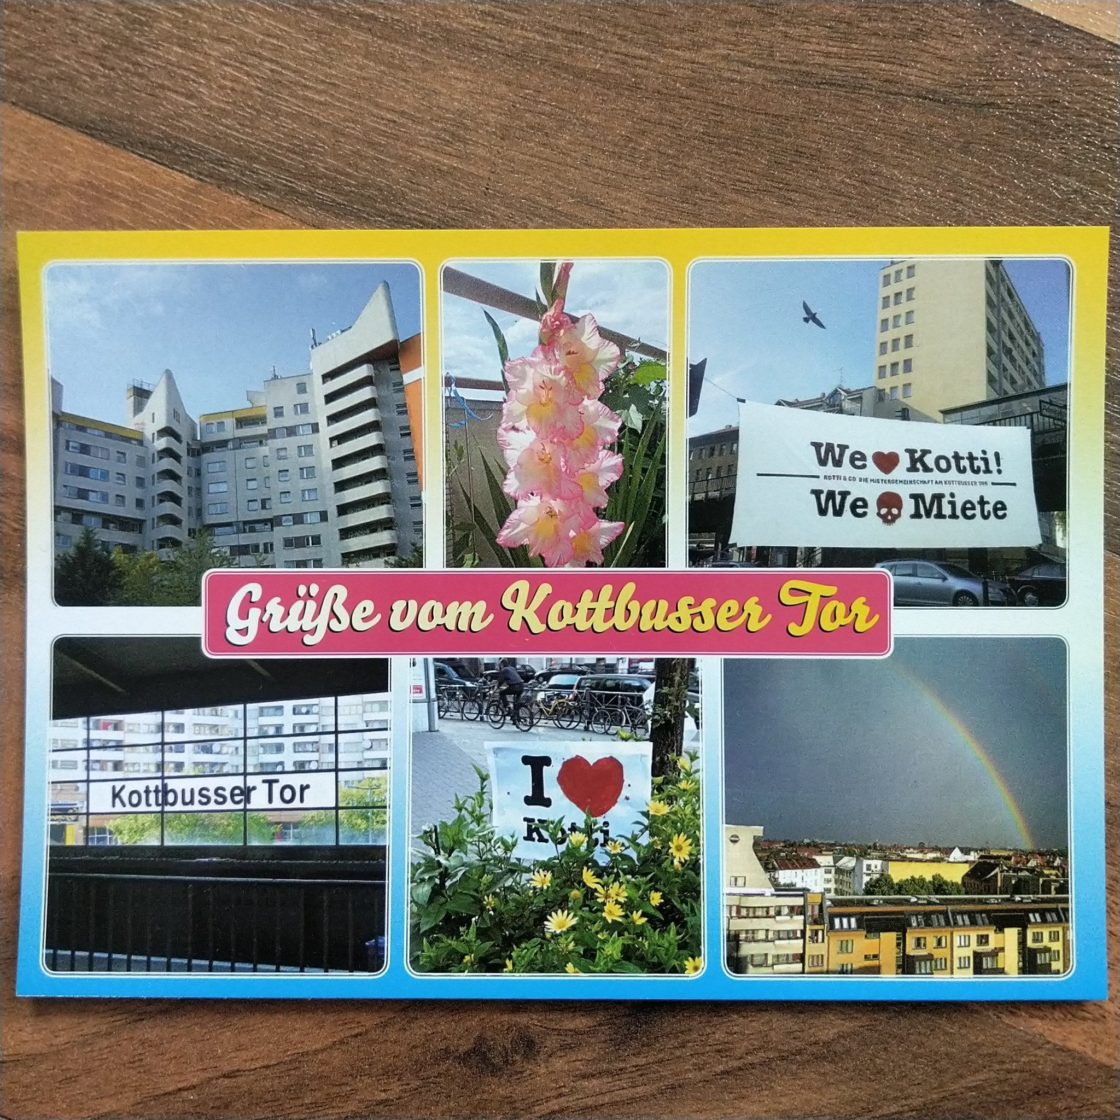 Postkarte mit 6 Motive. Hochhaus am Kotti, weiß und spitz, Blumen, Banner mit "we ❤️Kotti We💀Miete", U-Bahnstation Kottbusser Tor, Banner "I❤️Kotti" mitten in Blumen und Fahrräder, Regenbogen über Berlin. In der Mitte gelb auf pink, "Grüße vom Kottbusser Tor"